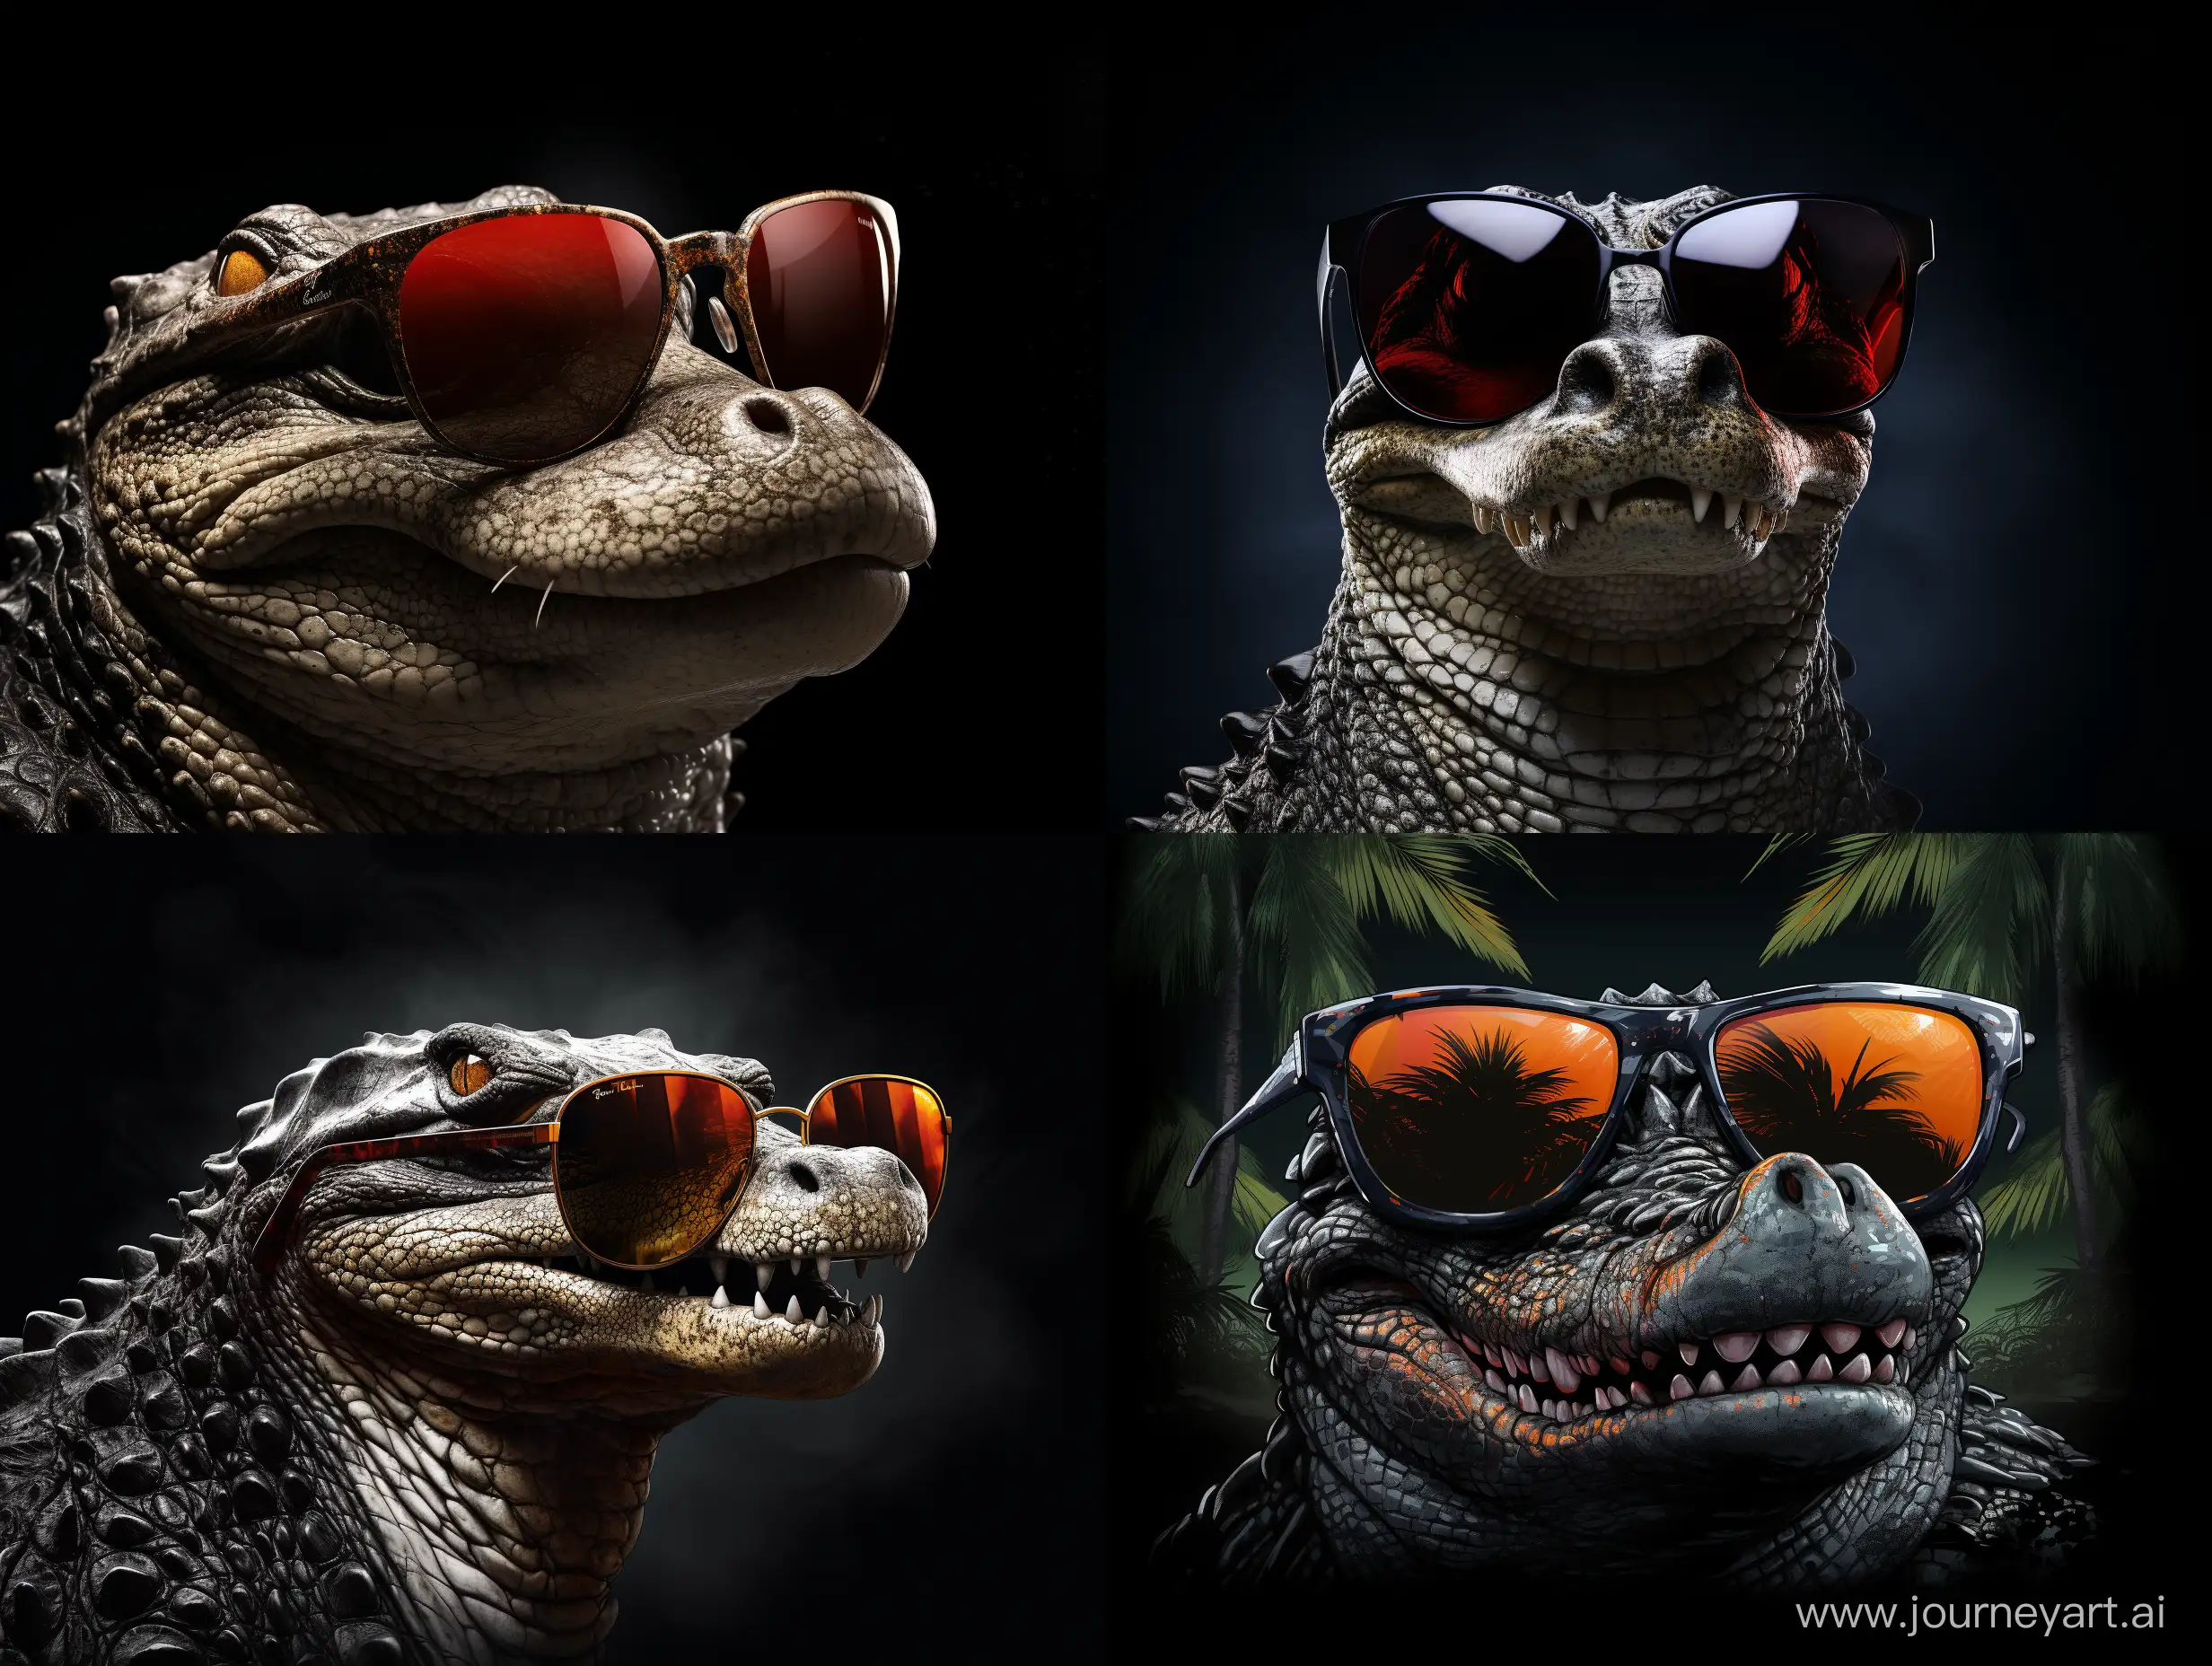 Заставка для сайта. Заставка на черном фоне. Страшный и крокодил в полный размер, в солнцезащитных очках.